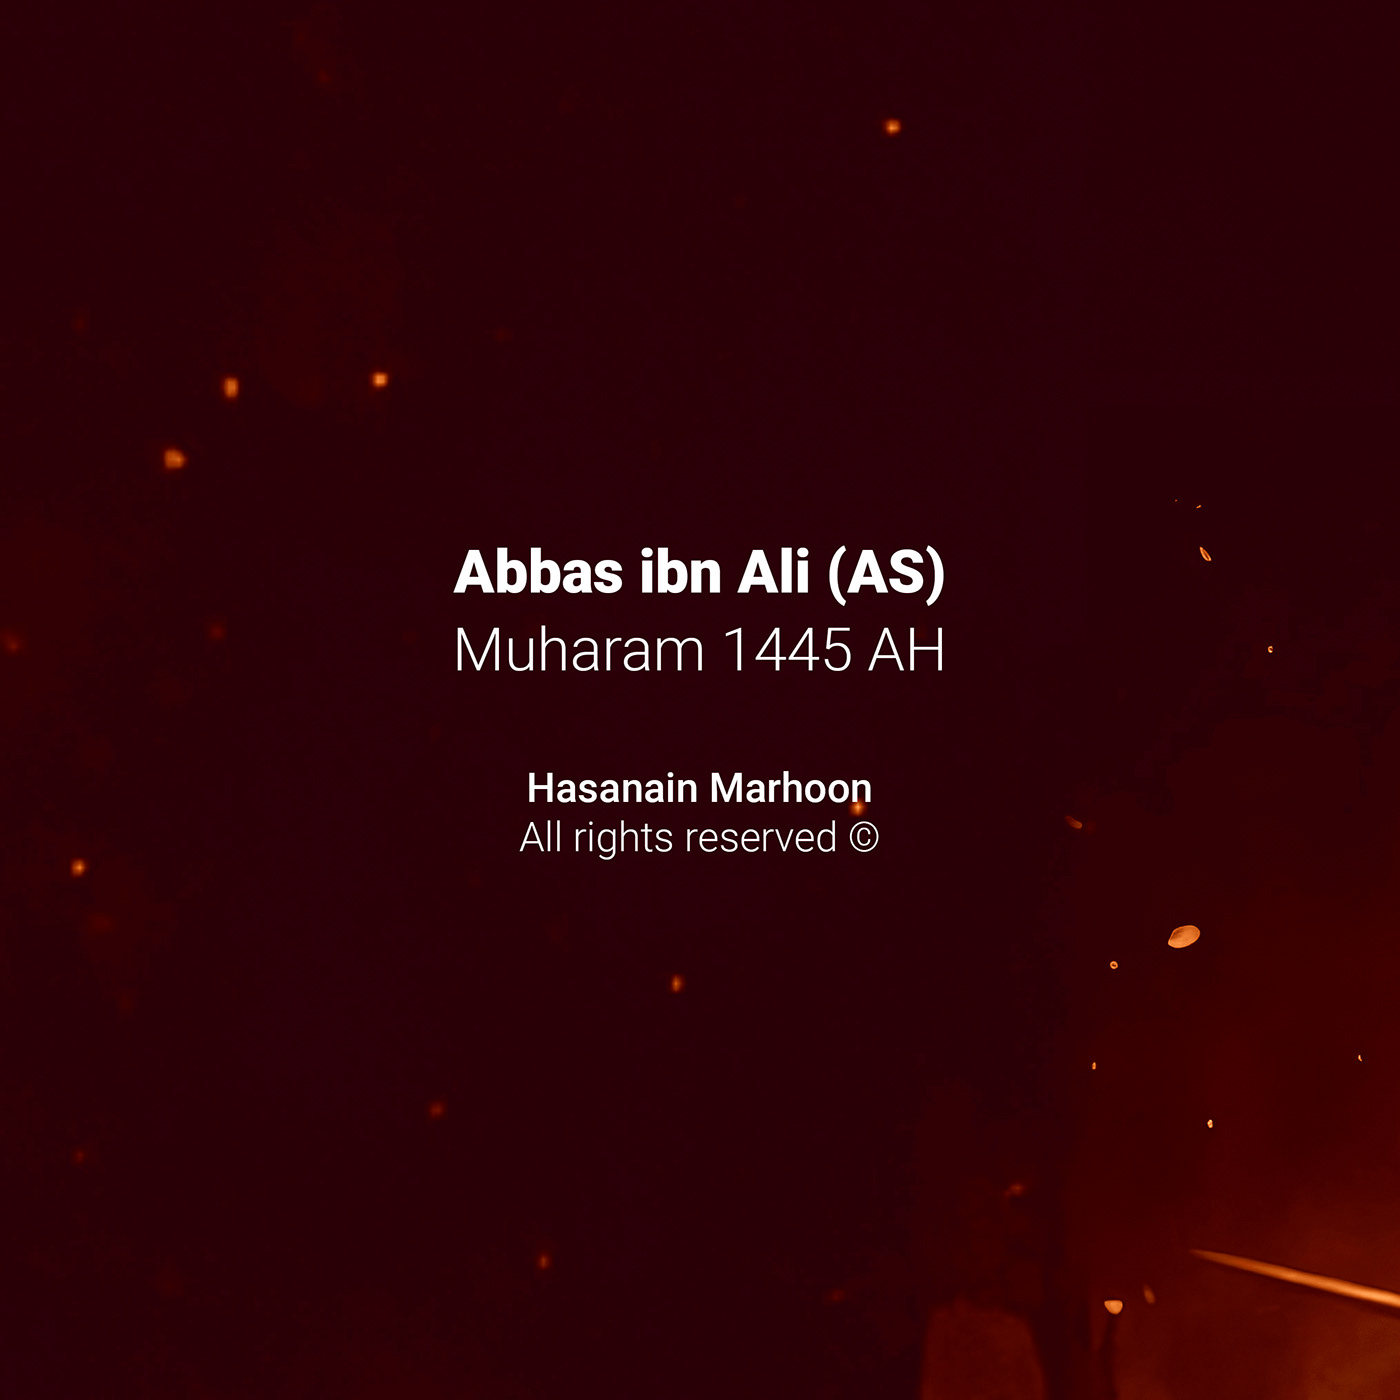 ashoora muharam Ashura karbala imam hussain عاشوراء Muharram Abbas ibn Ali Muharram Karbala Bahrain